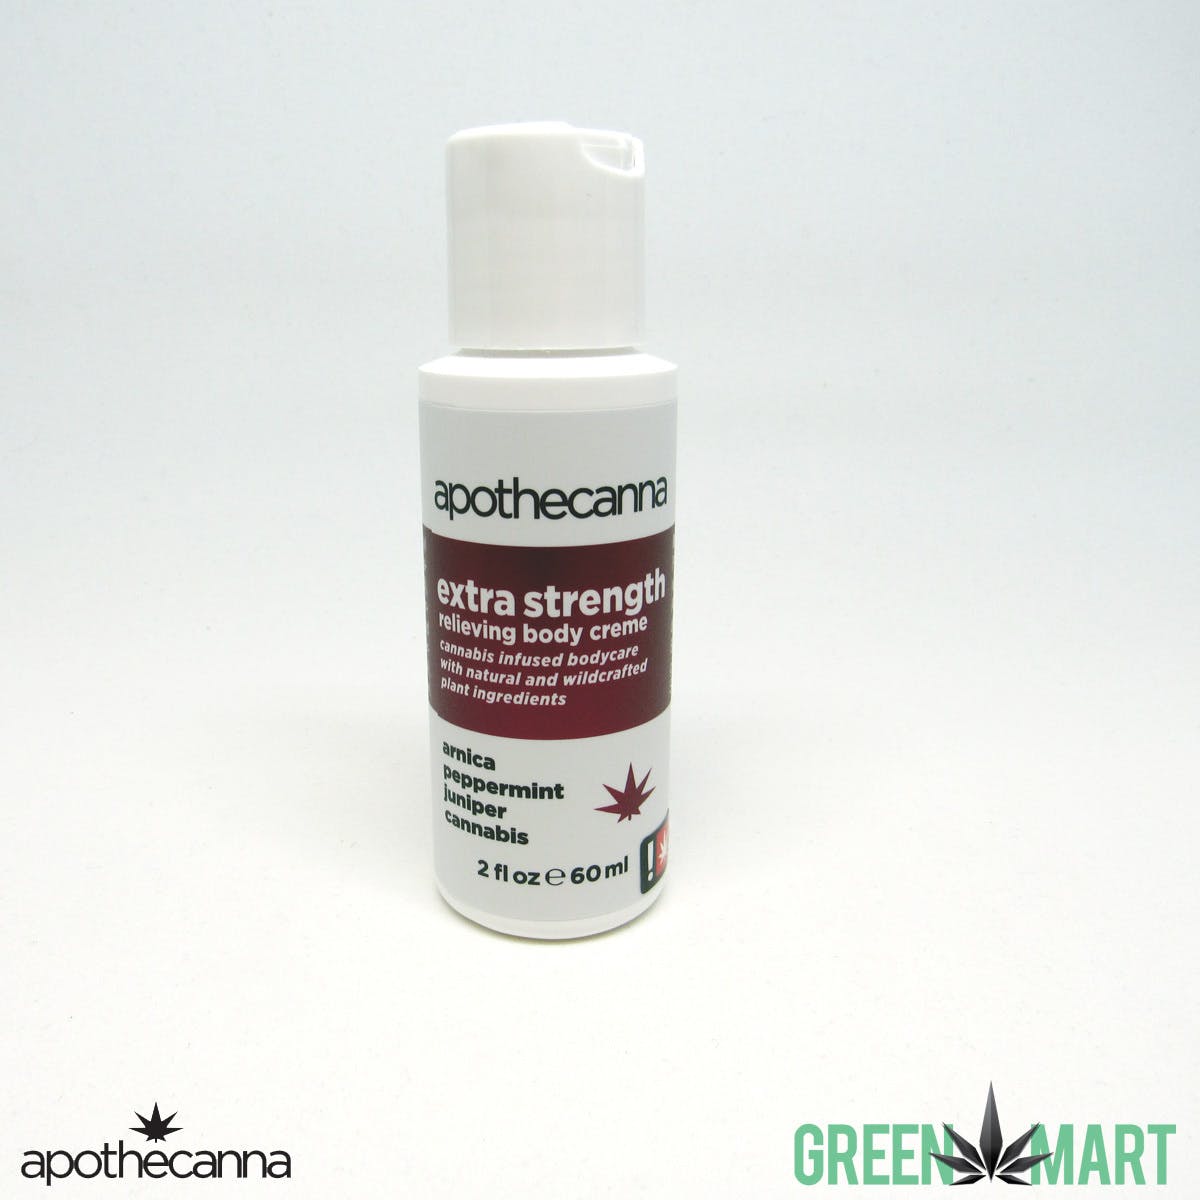 marijuana-dispensaries-green-mart-in-beaverton-apothecanna-extra-strength-body-creme-2oz